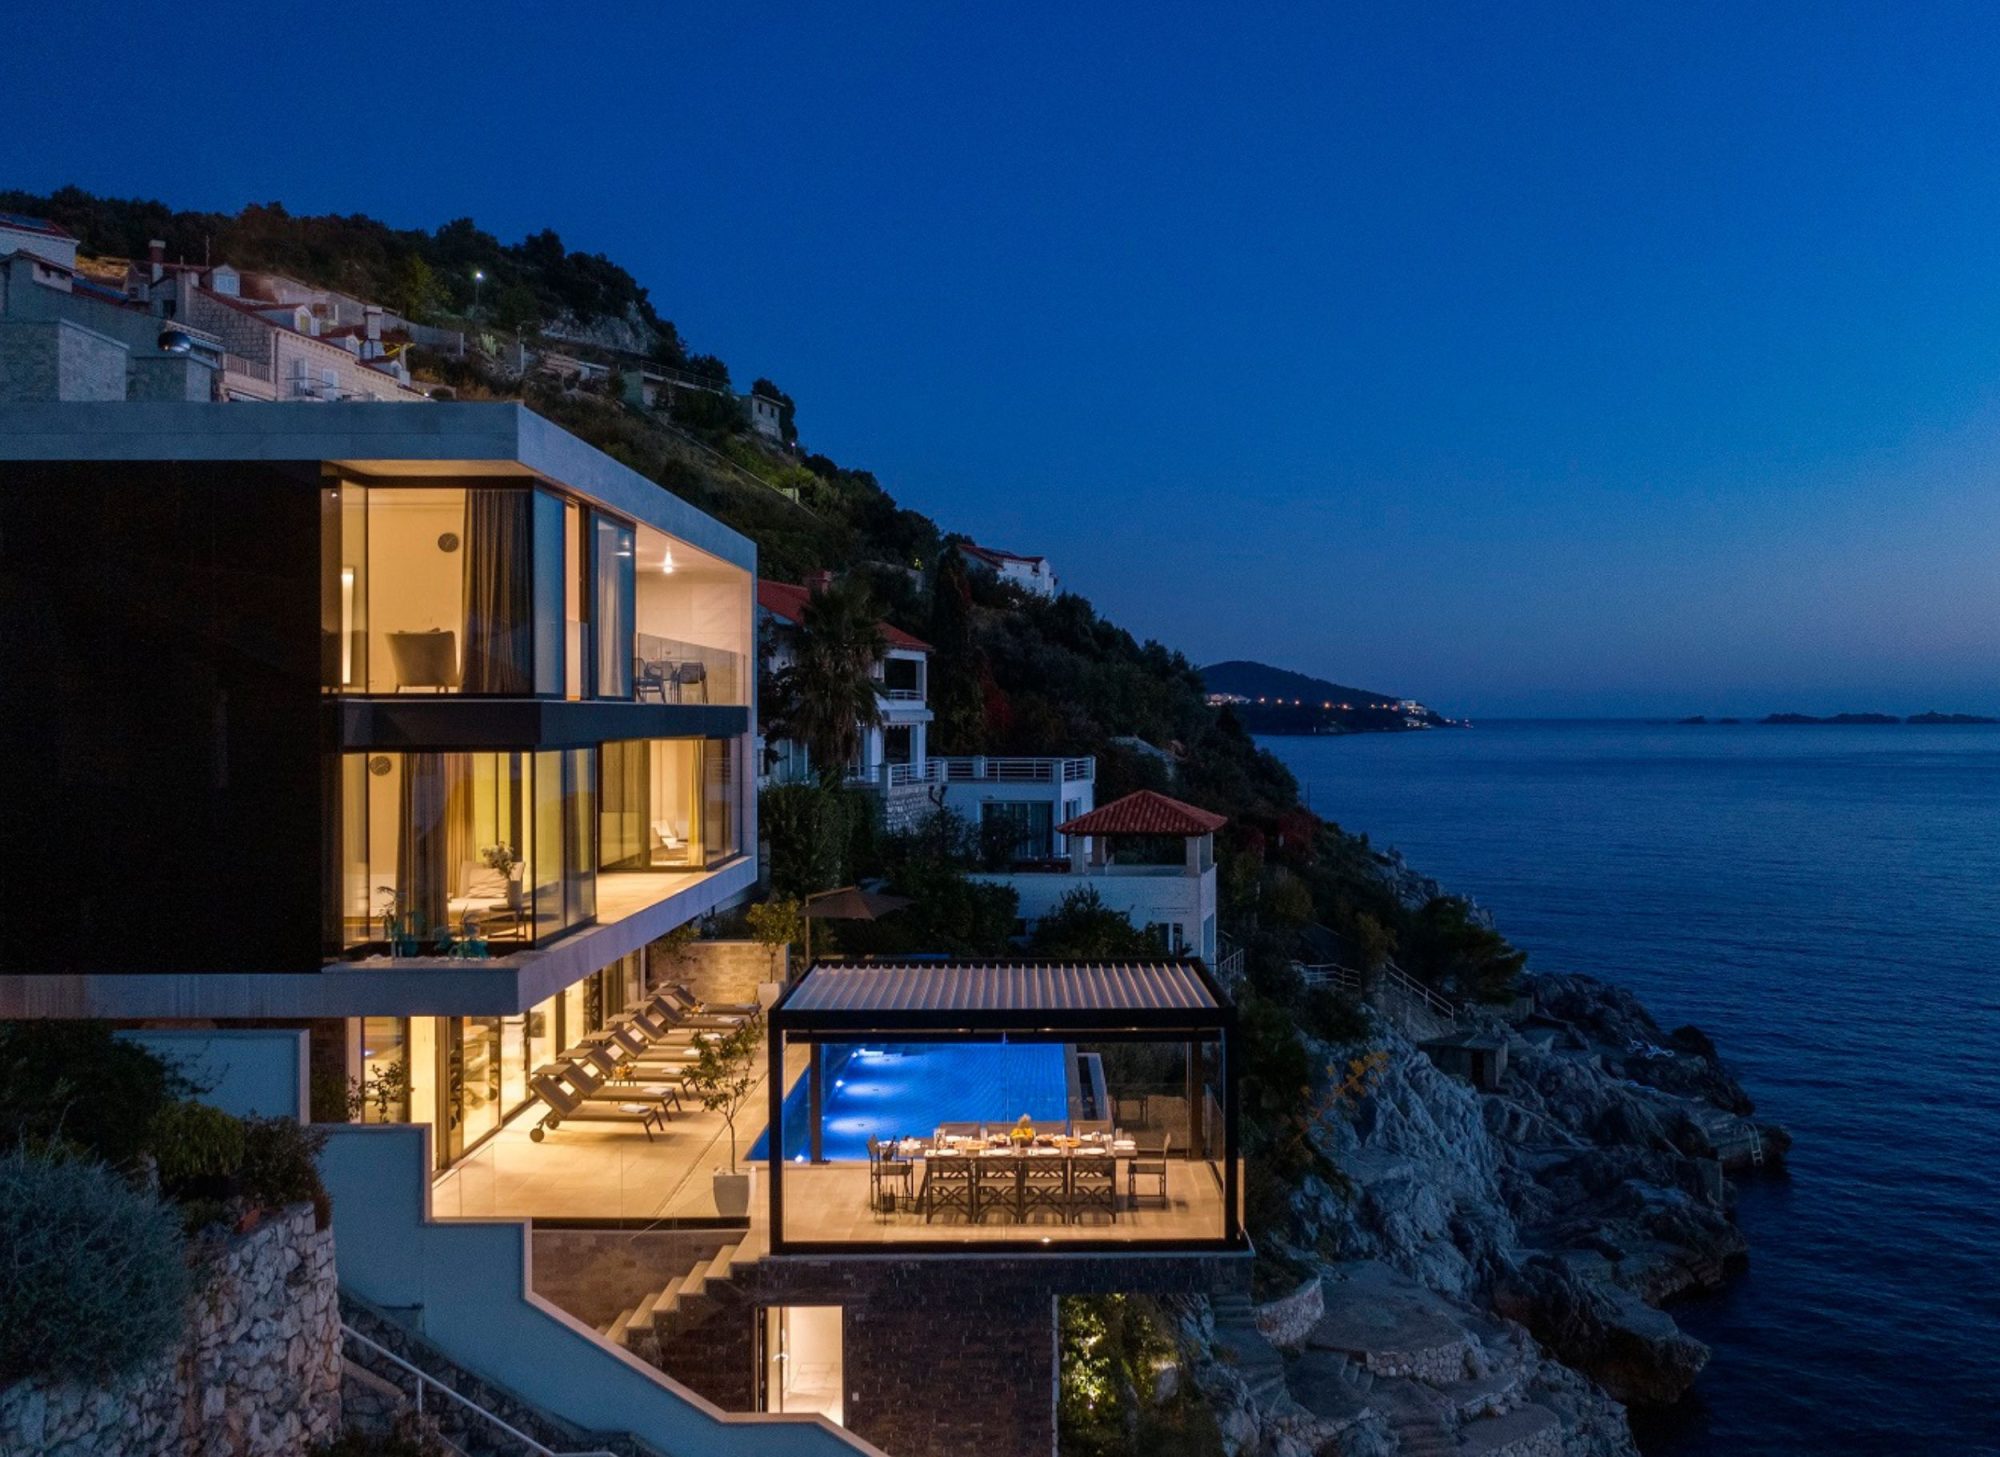 Villa Dubrovnik: Croatian elegance redefined